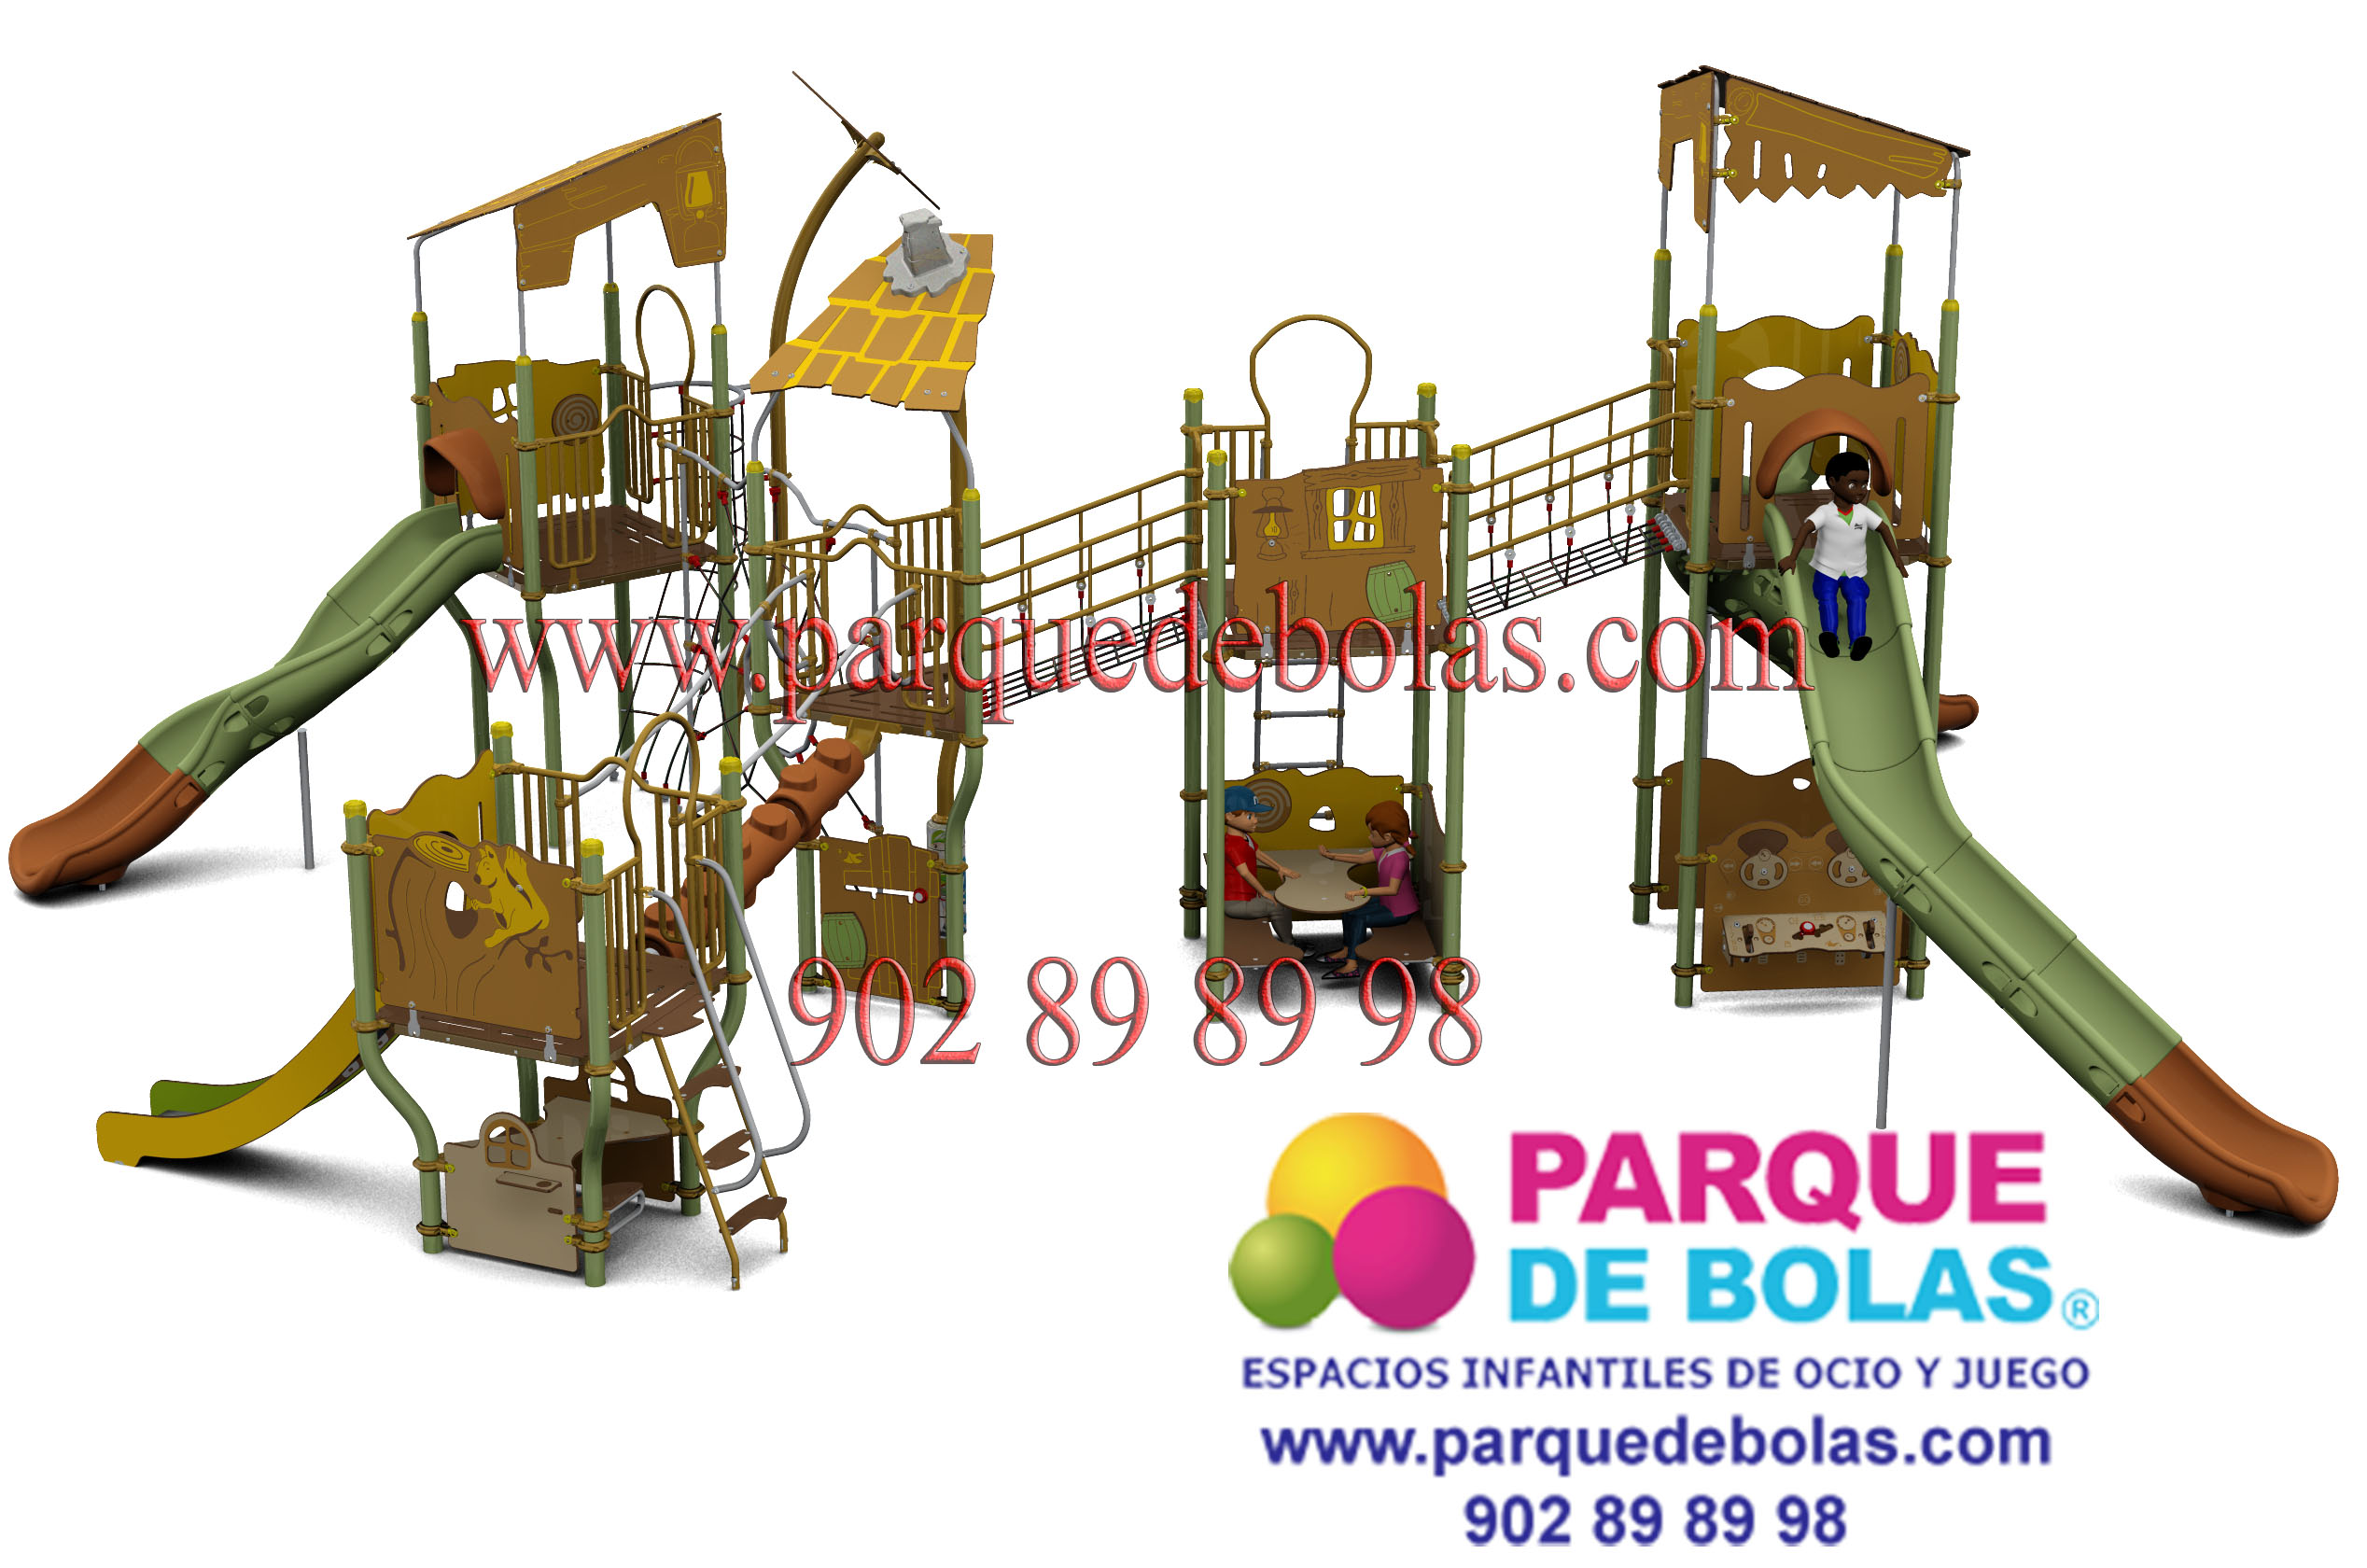 PARQUE INFANTIL MASGAMES BELVEDERE L - FerrePark Canarias - Césped  Artificial y Parques Infantiles Tenerife